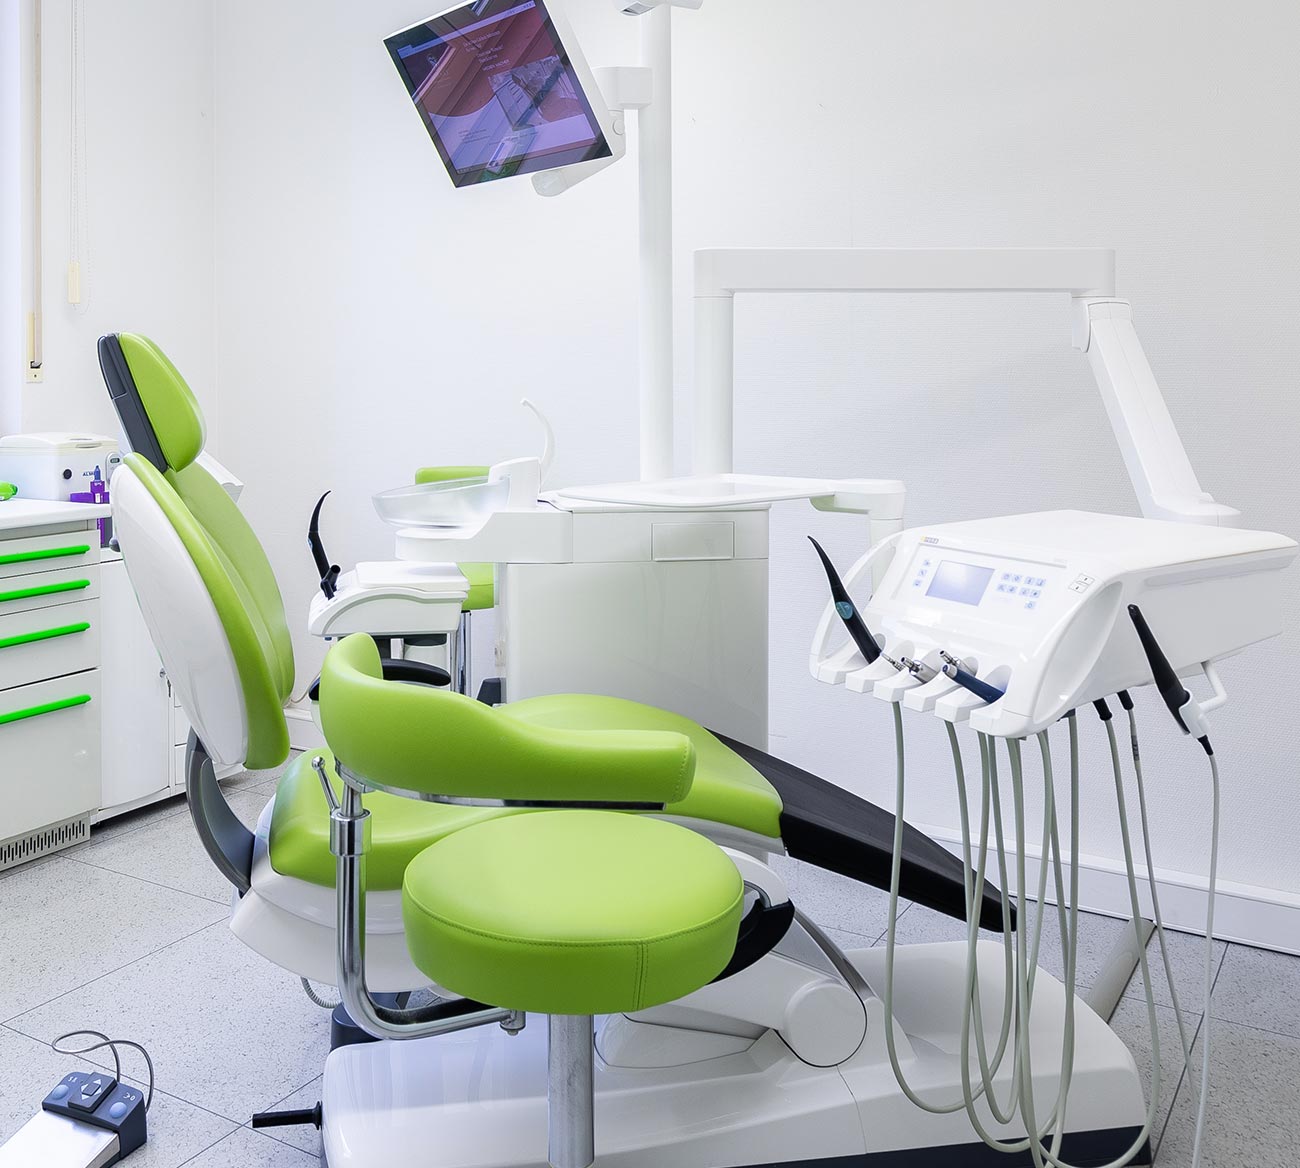 Zahnarztpraxis Totolici - Behandlungszimmer mit gruenem Behandlungsstuhl